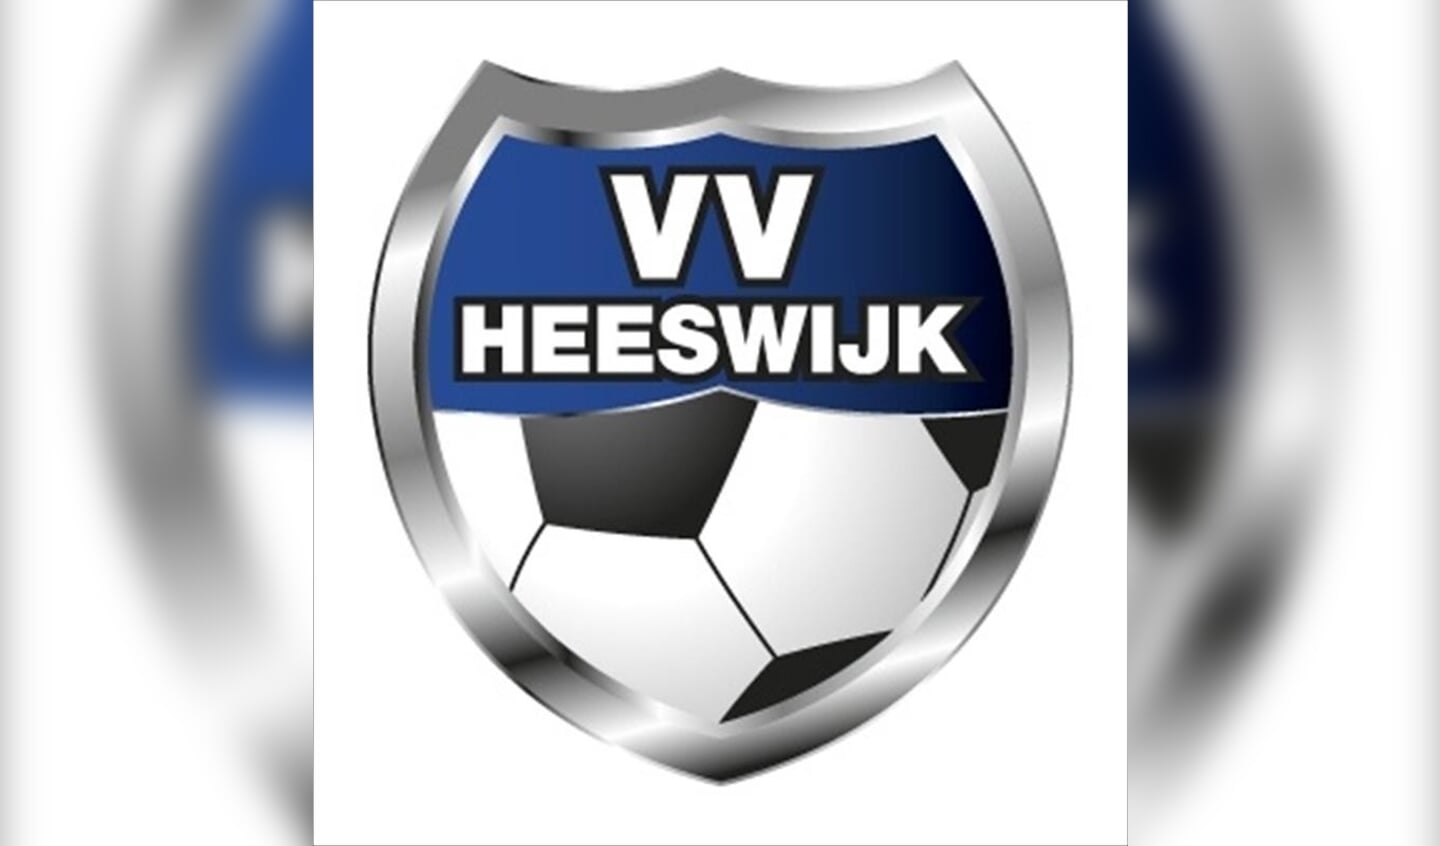 Voetbalvereniging Heeswijk staat op tegen kanker